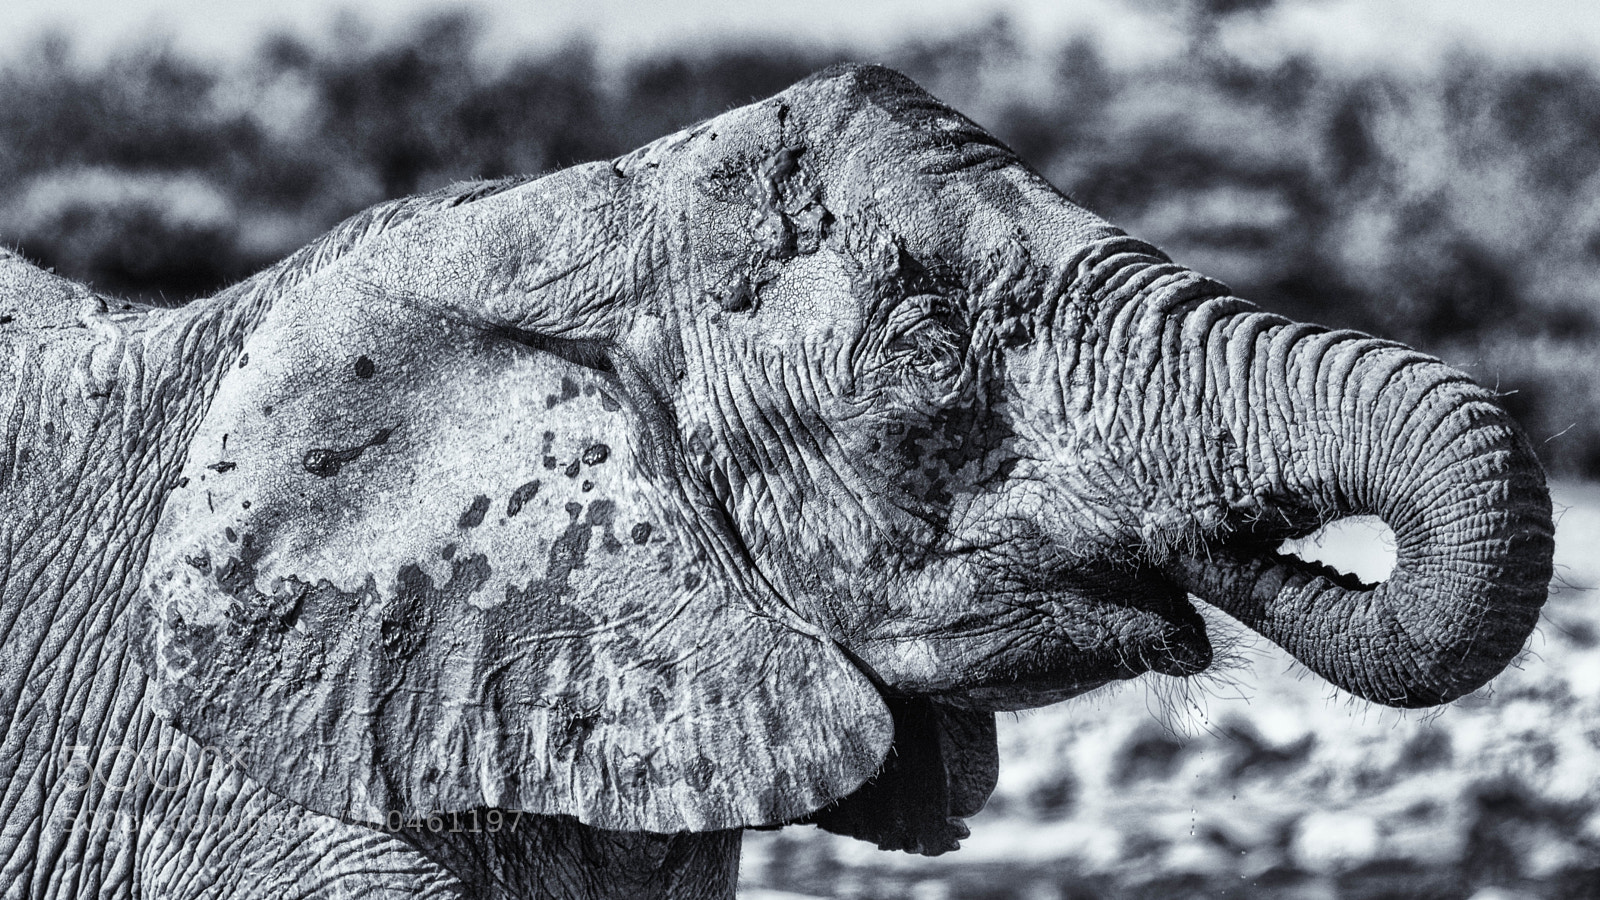 Pentax K-3 II sample photo. Elephant, etosha photography